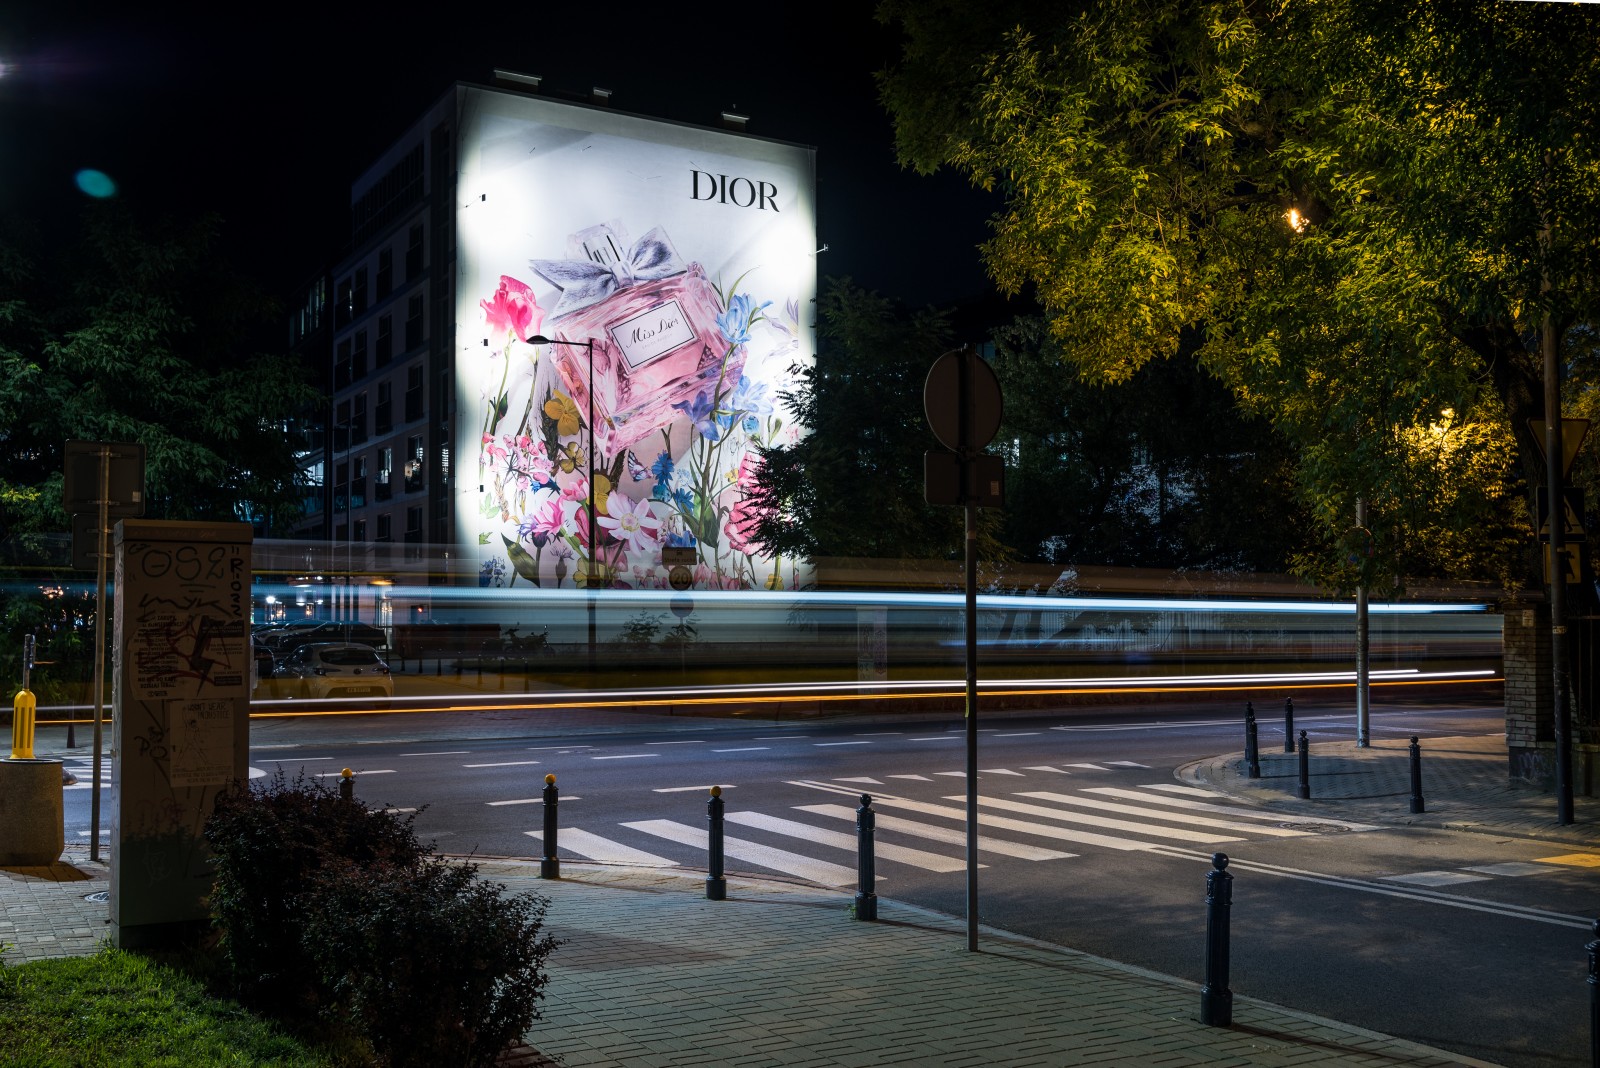 Mural reklamowy Dior w Warszawie | Miss Dior | Portfolio